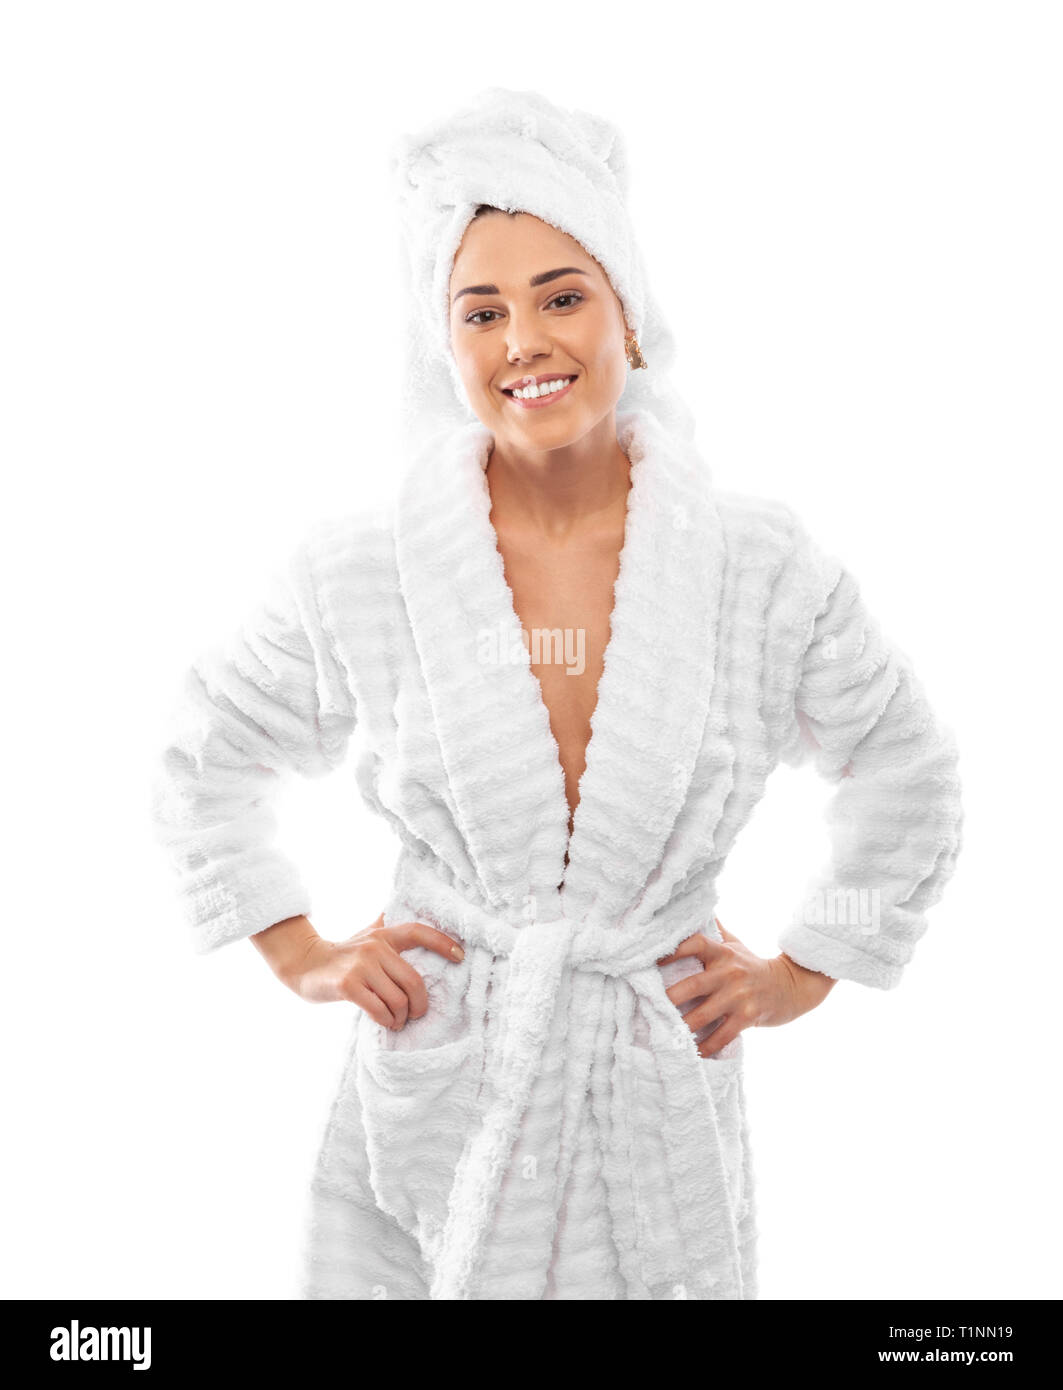 Jeune femme dans un peignoir et serviette sur la tête Photo Stock - Alamy